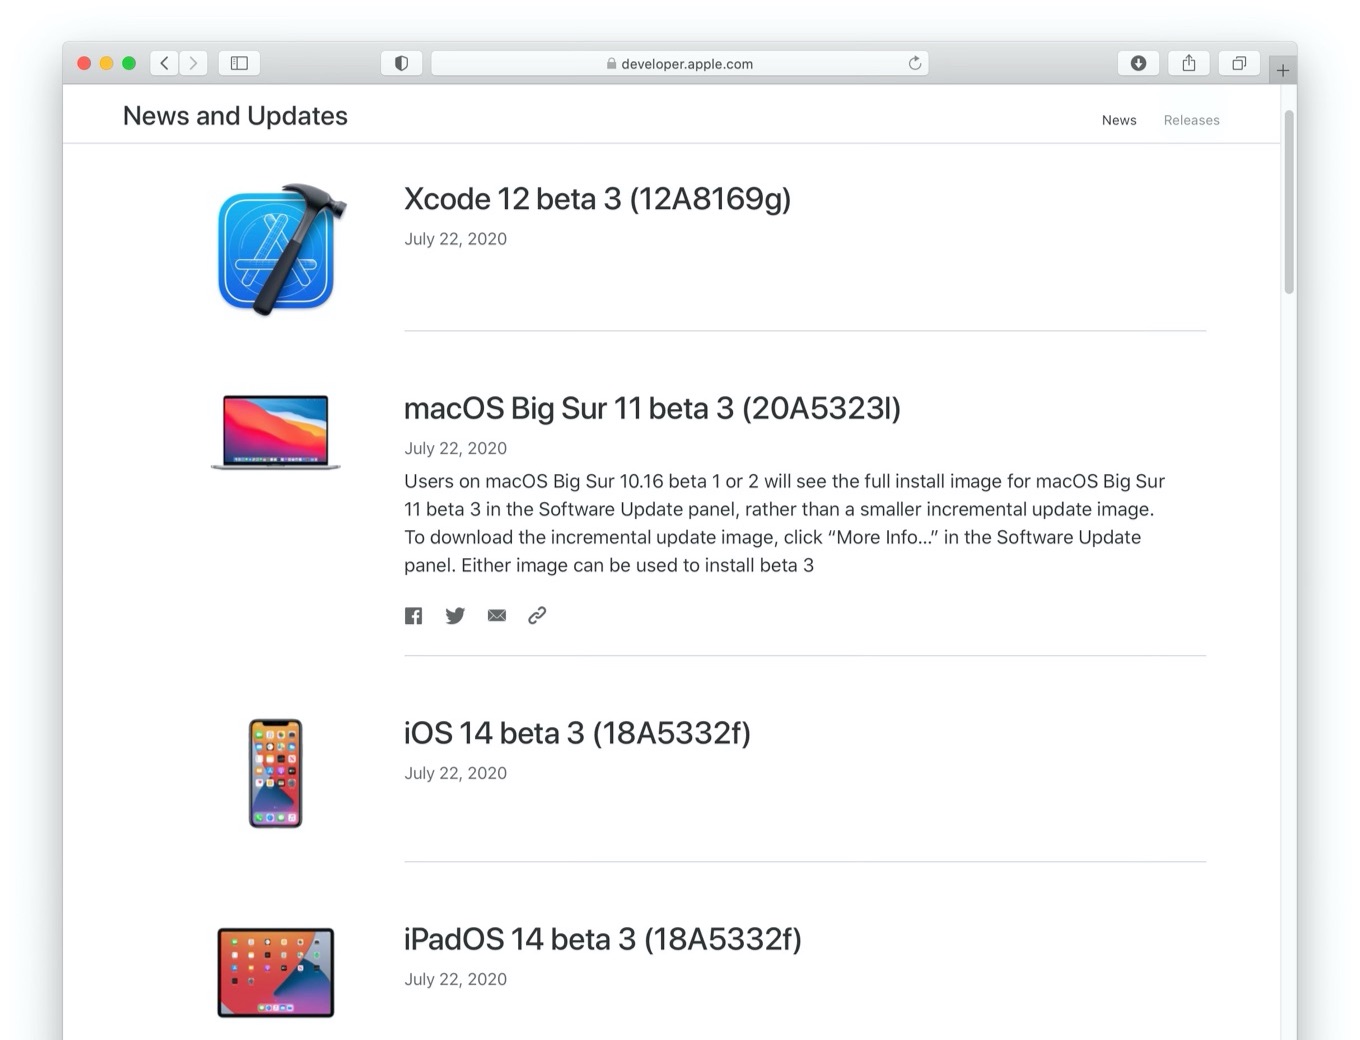 macOS Big Sur 11 beta 3 (20A5323l)